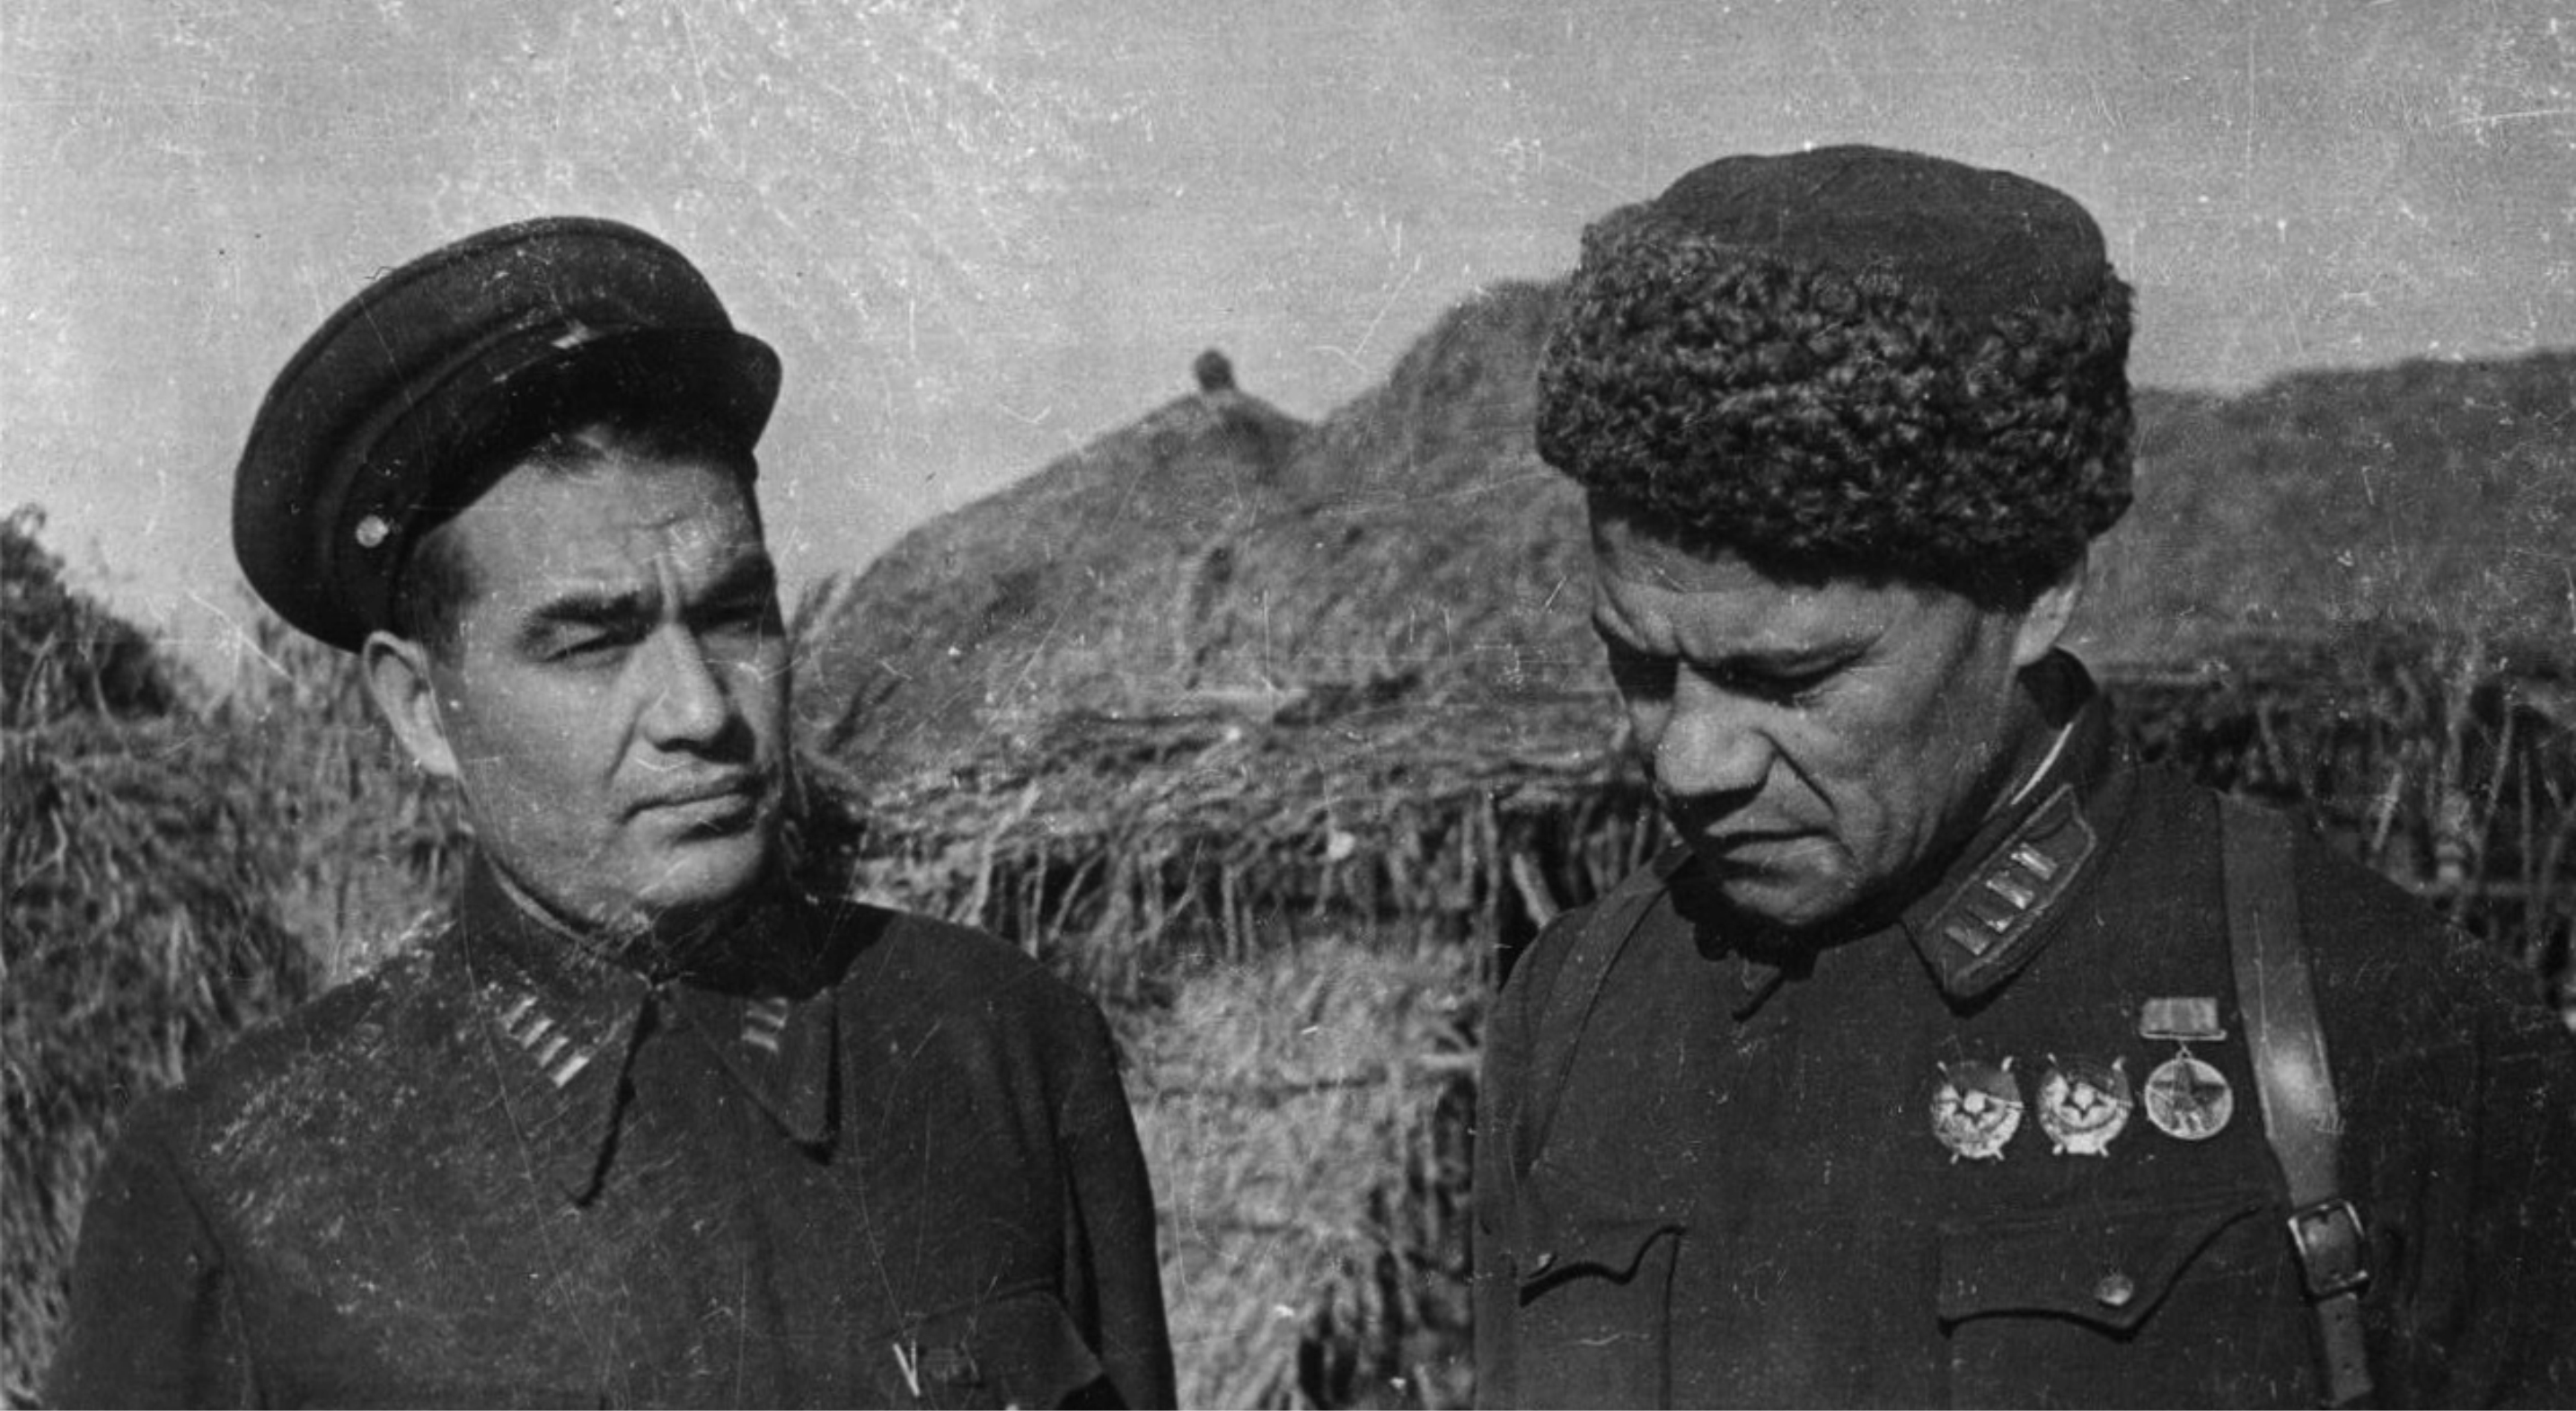 Генерал-майор М.М. Шаймуратов (справа), командир легендарной 112-й Башкирской кавалерийской дивизии и генерал-майор Г.Ш. Галиев, уроженец д. Большие Шады.1942-1943 гг.